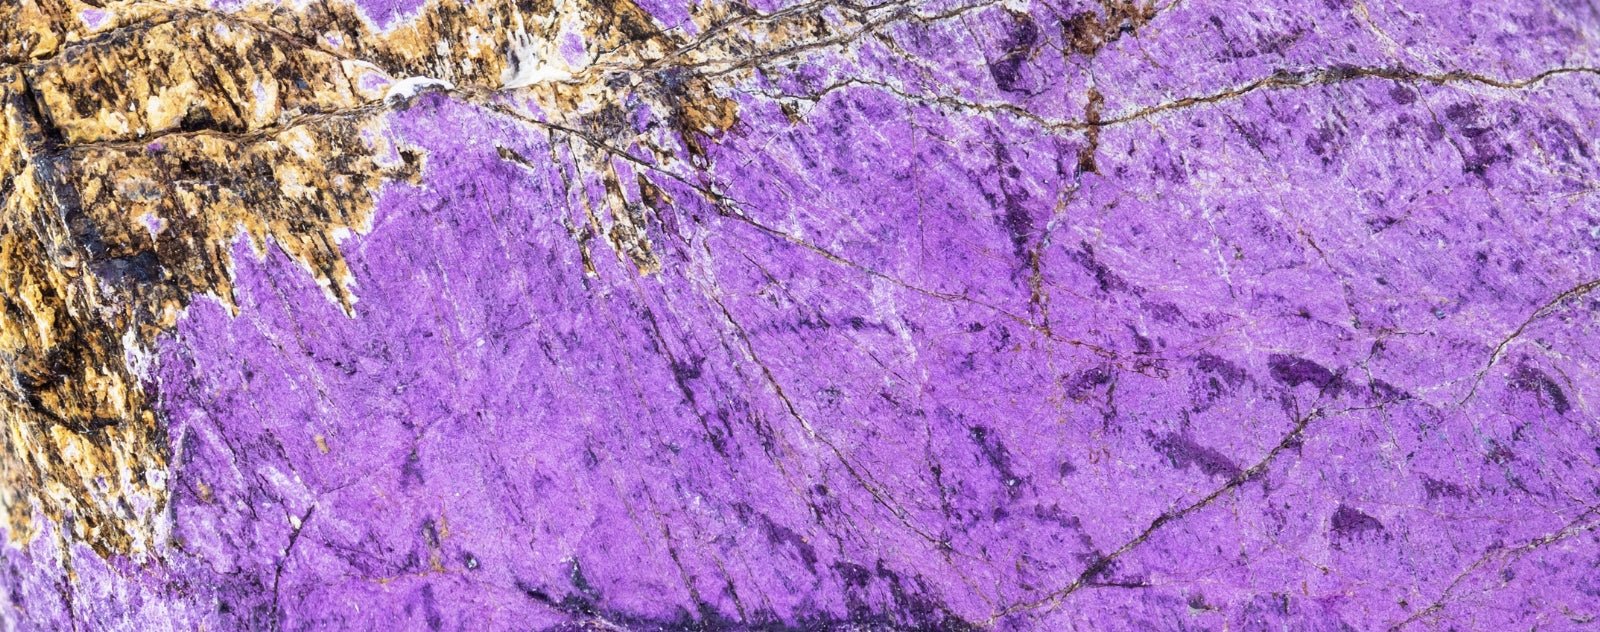 purpurite minéral vu de près